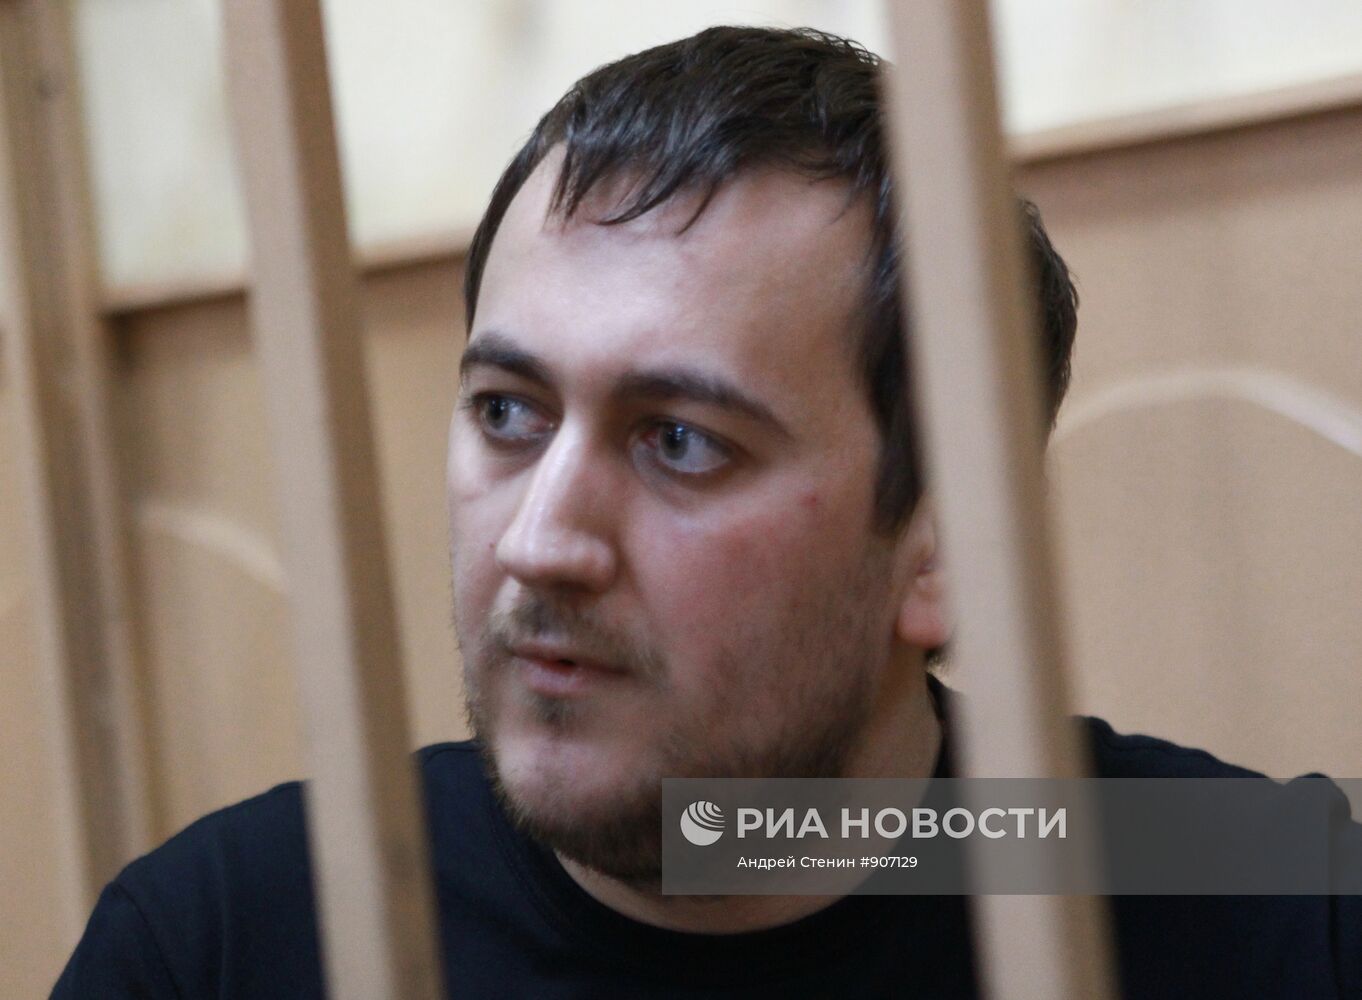 Арест Дмитрия Урумова в Басманном суде города Москвы